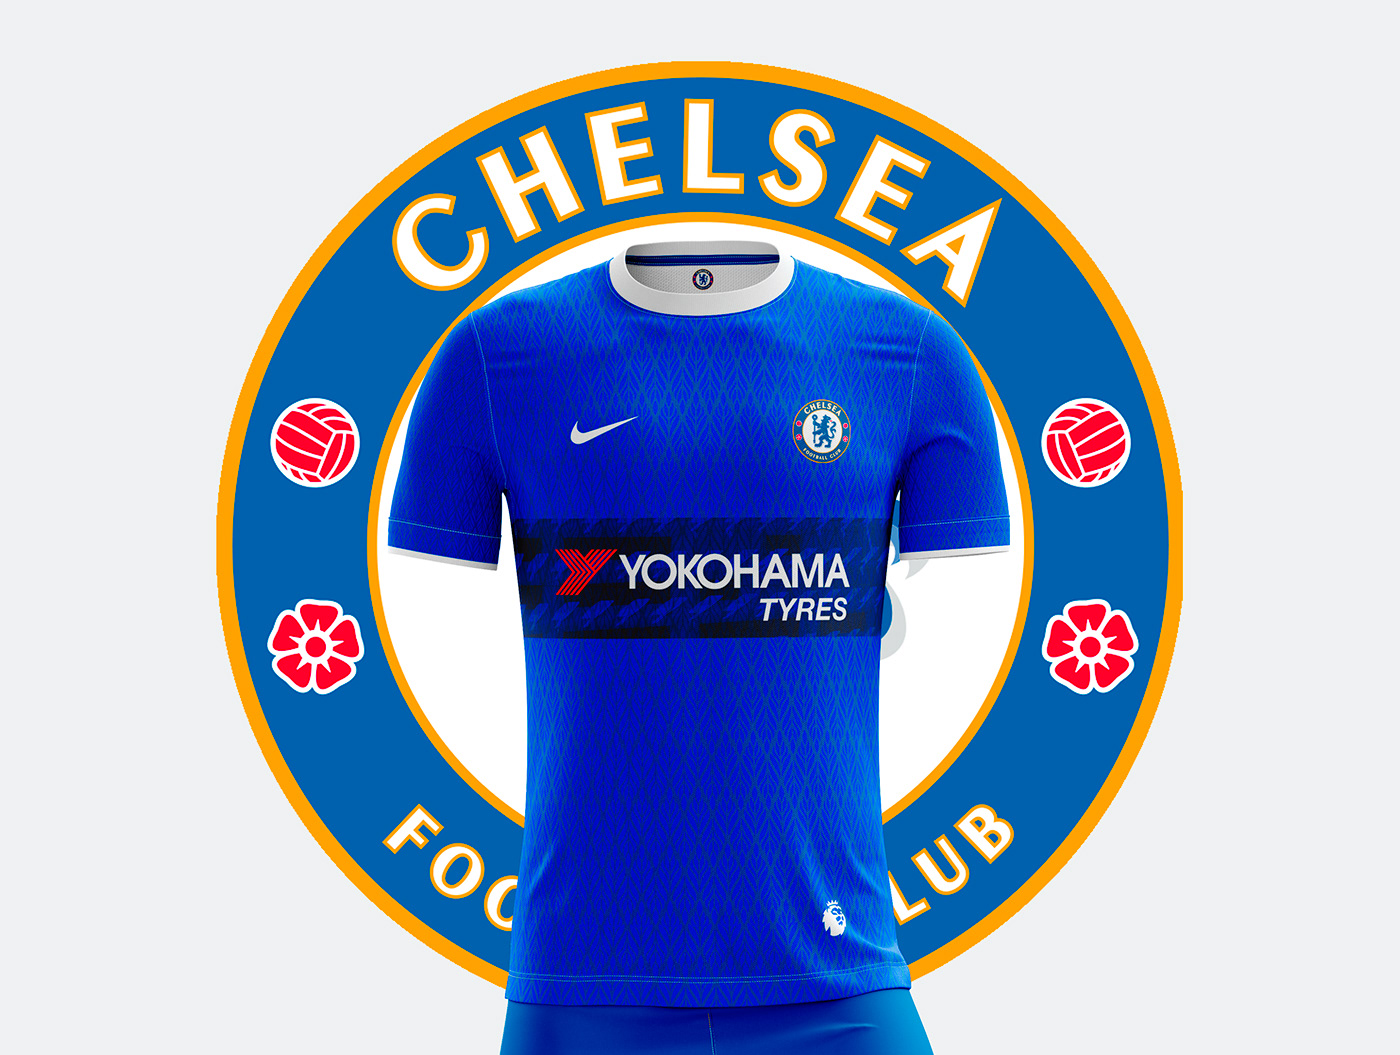 england premiereleague blue jersey Chelsea soccer inglaterra